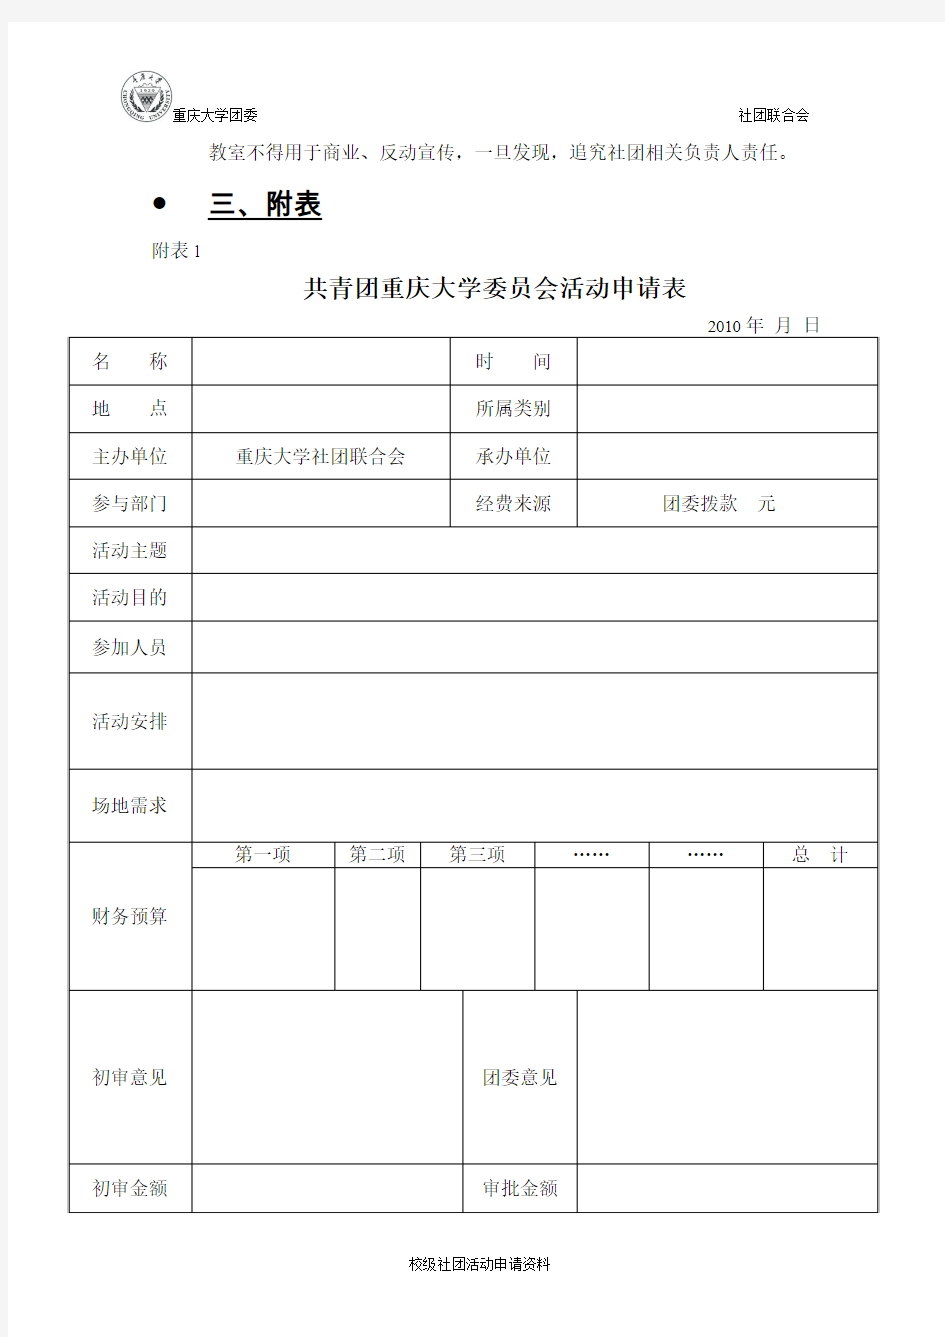 重庆大学校级社团活动申请资料(初稿)